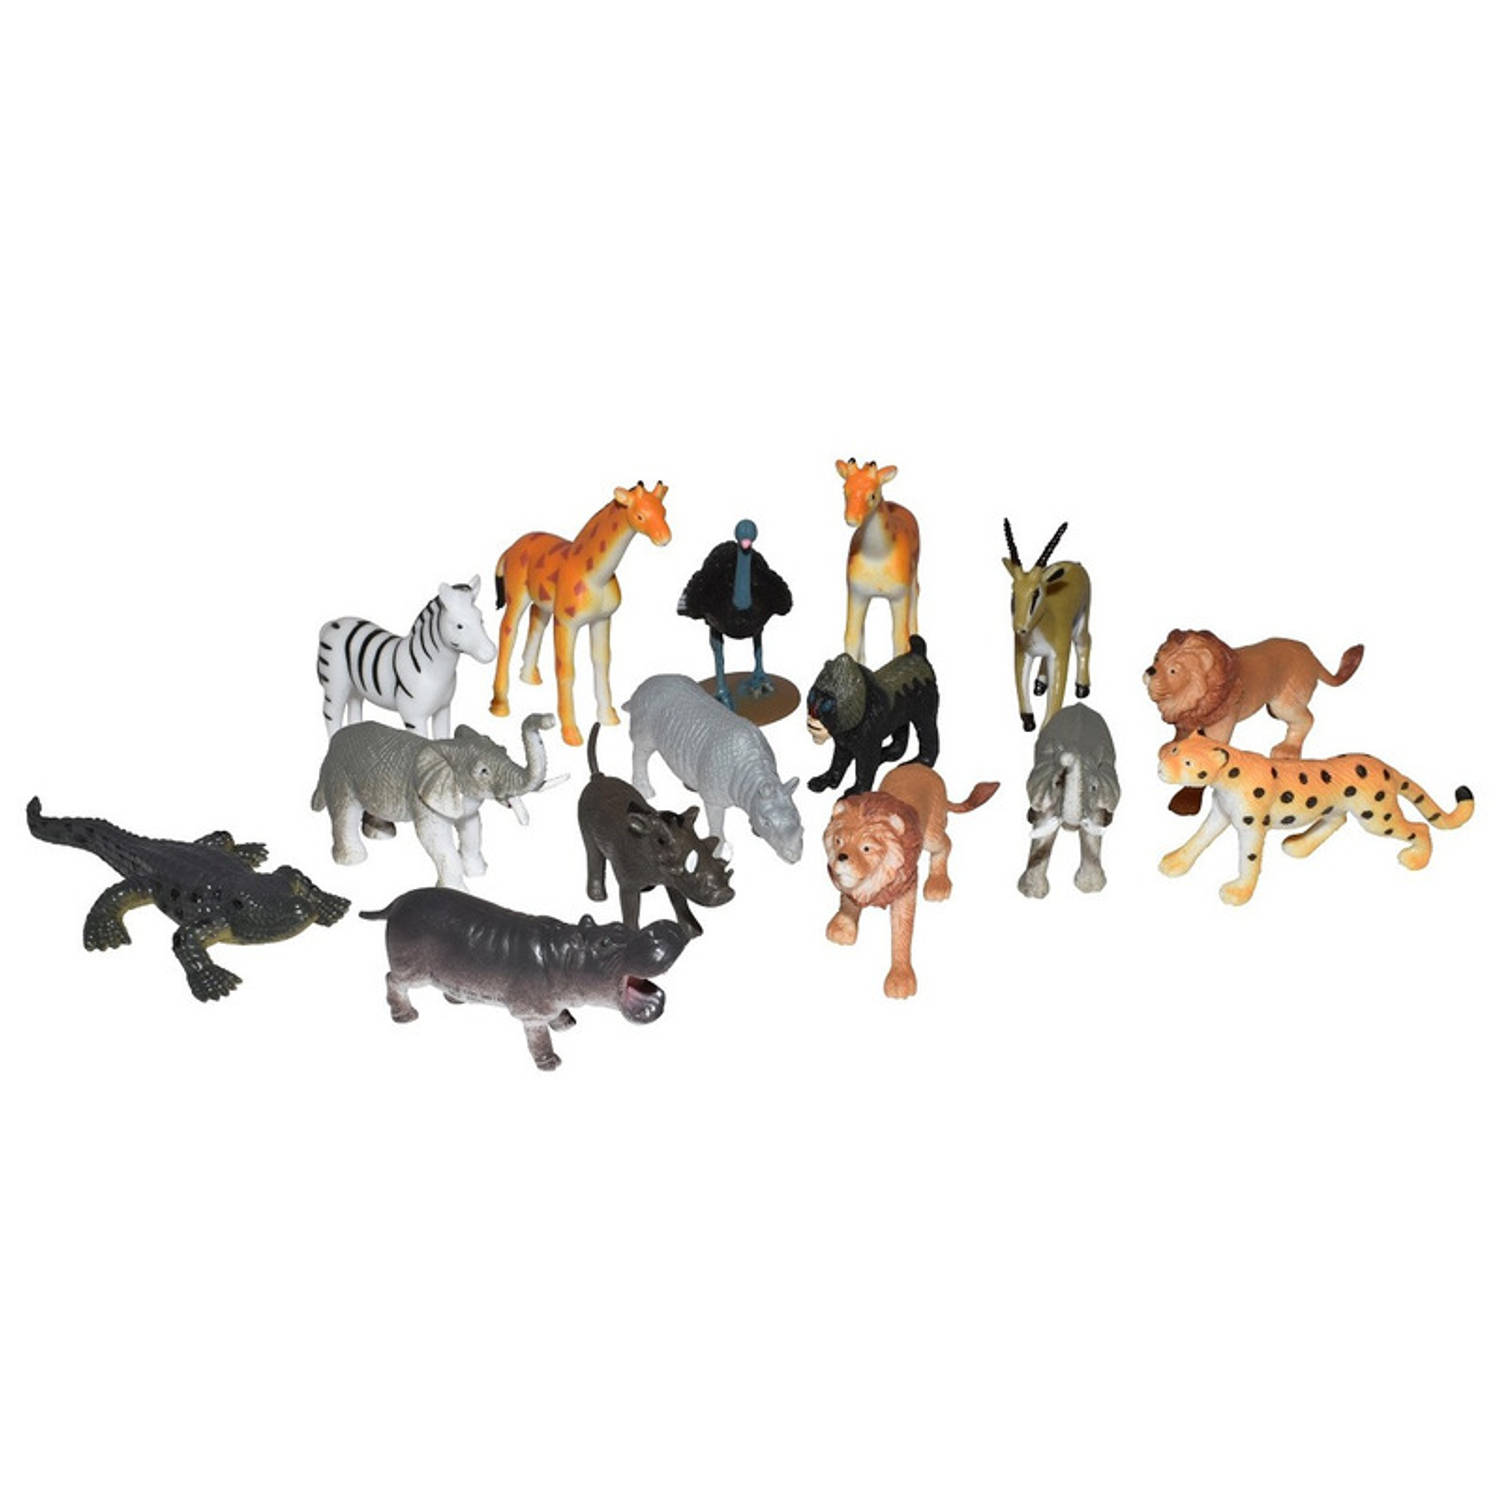 Speelset kinderen safari dieren 15 delig - Afrikaanse dieren safari dieren speelgoed - speelgoed voor kinderen